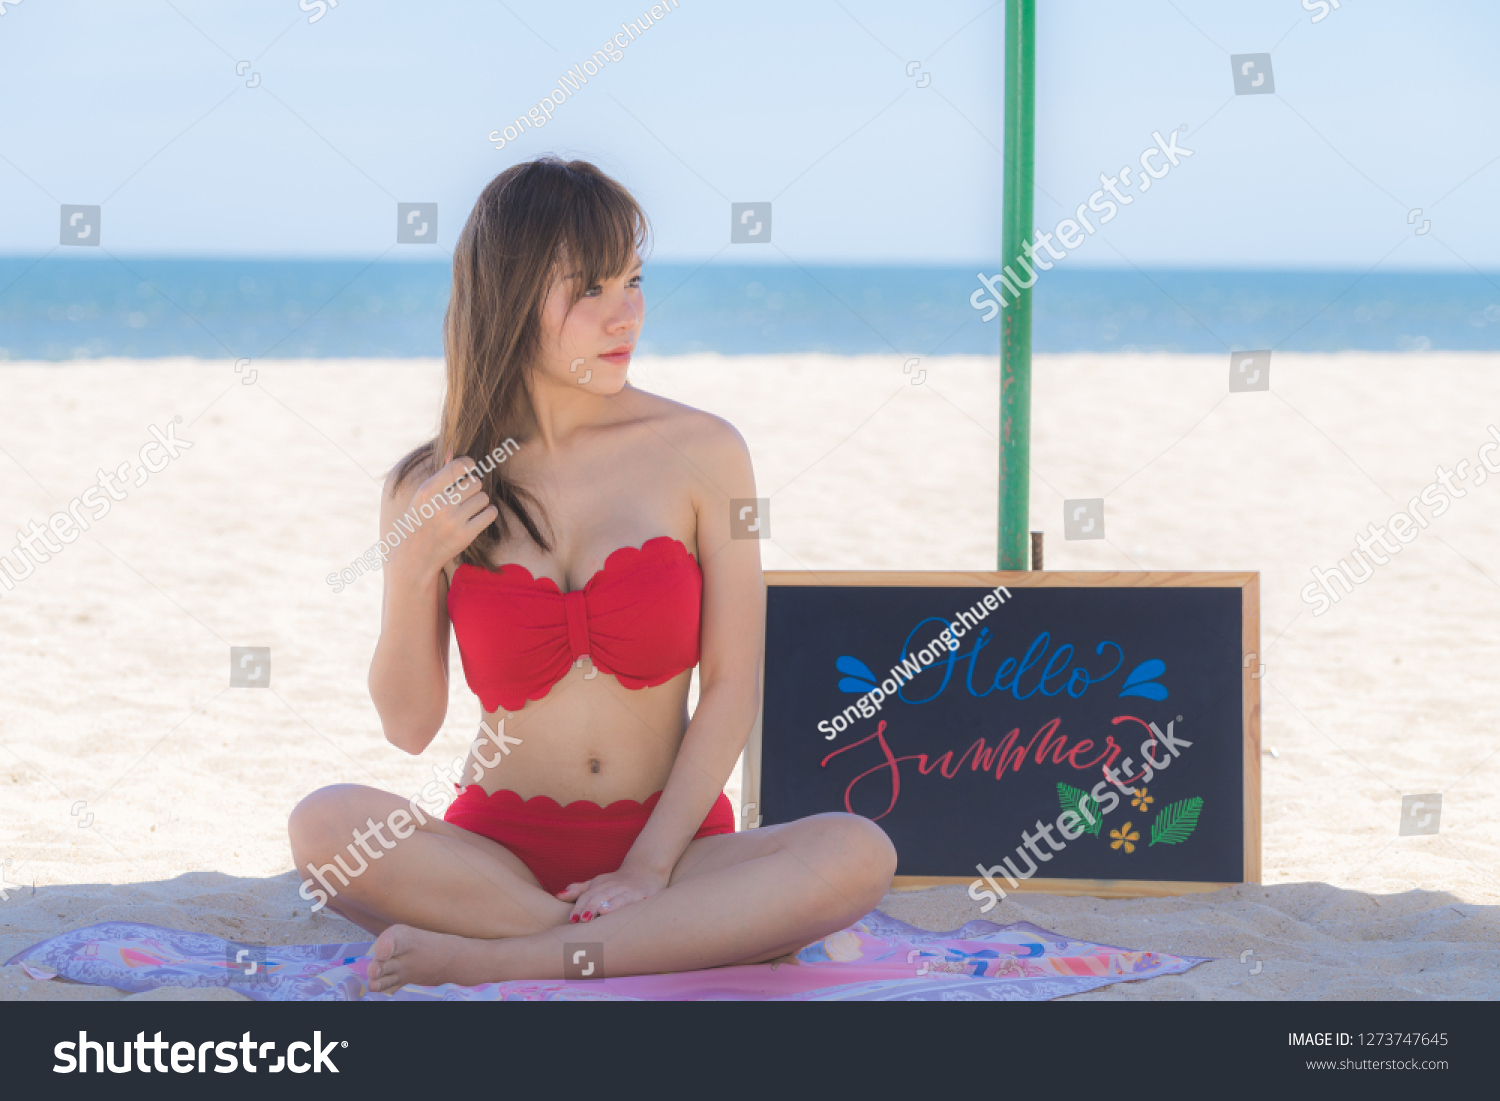 Asian Girl Looks SO Sexy In Her Bikini